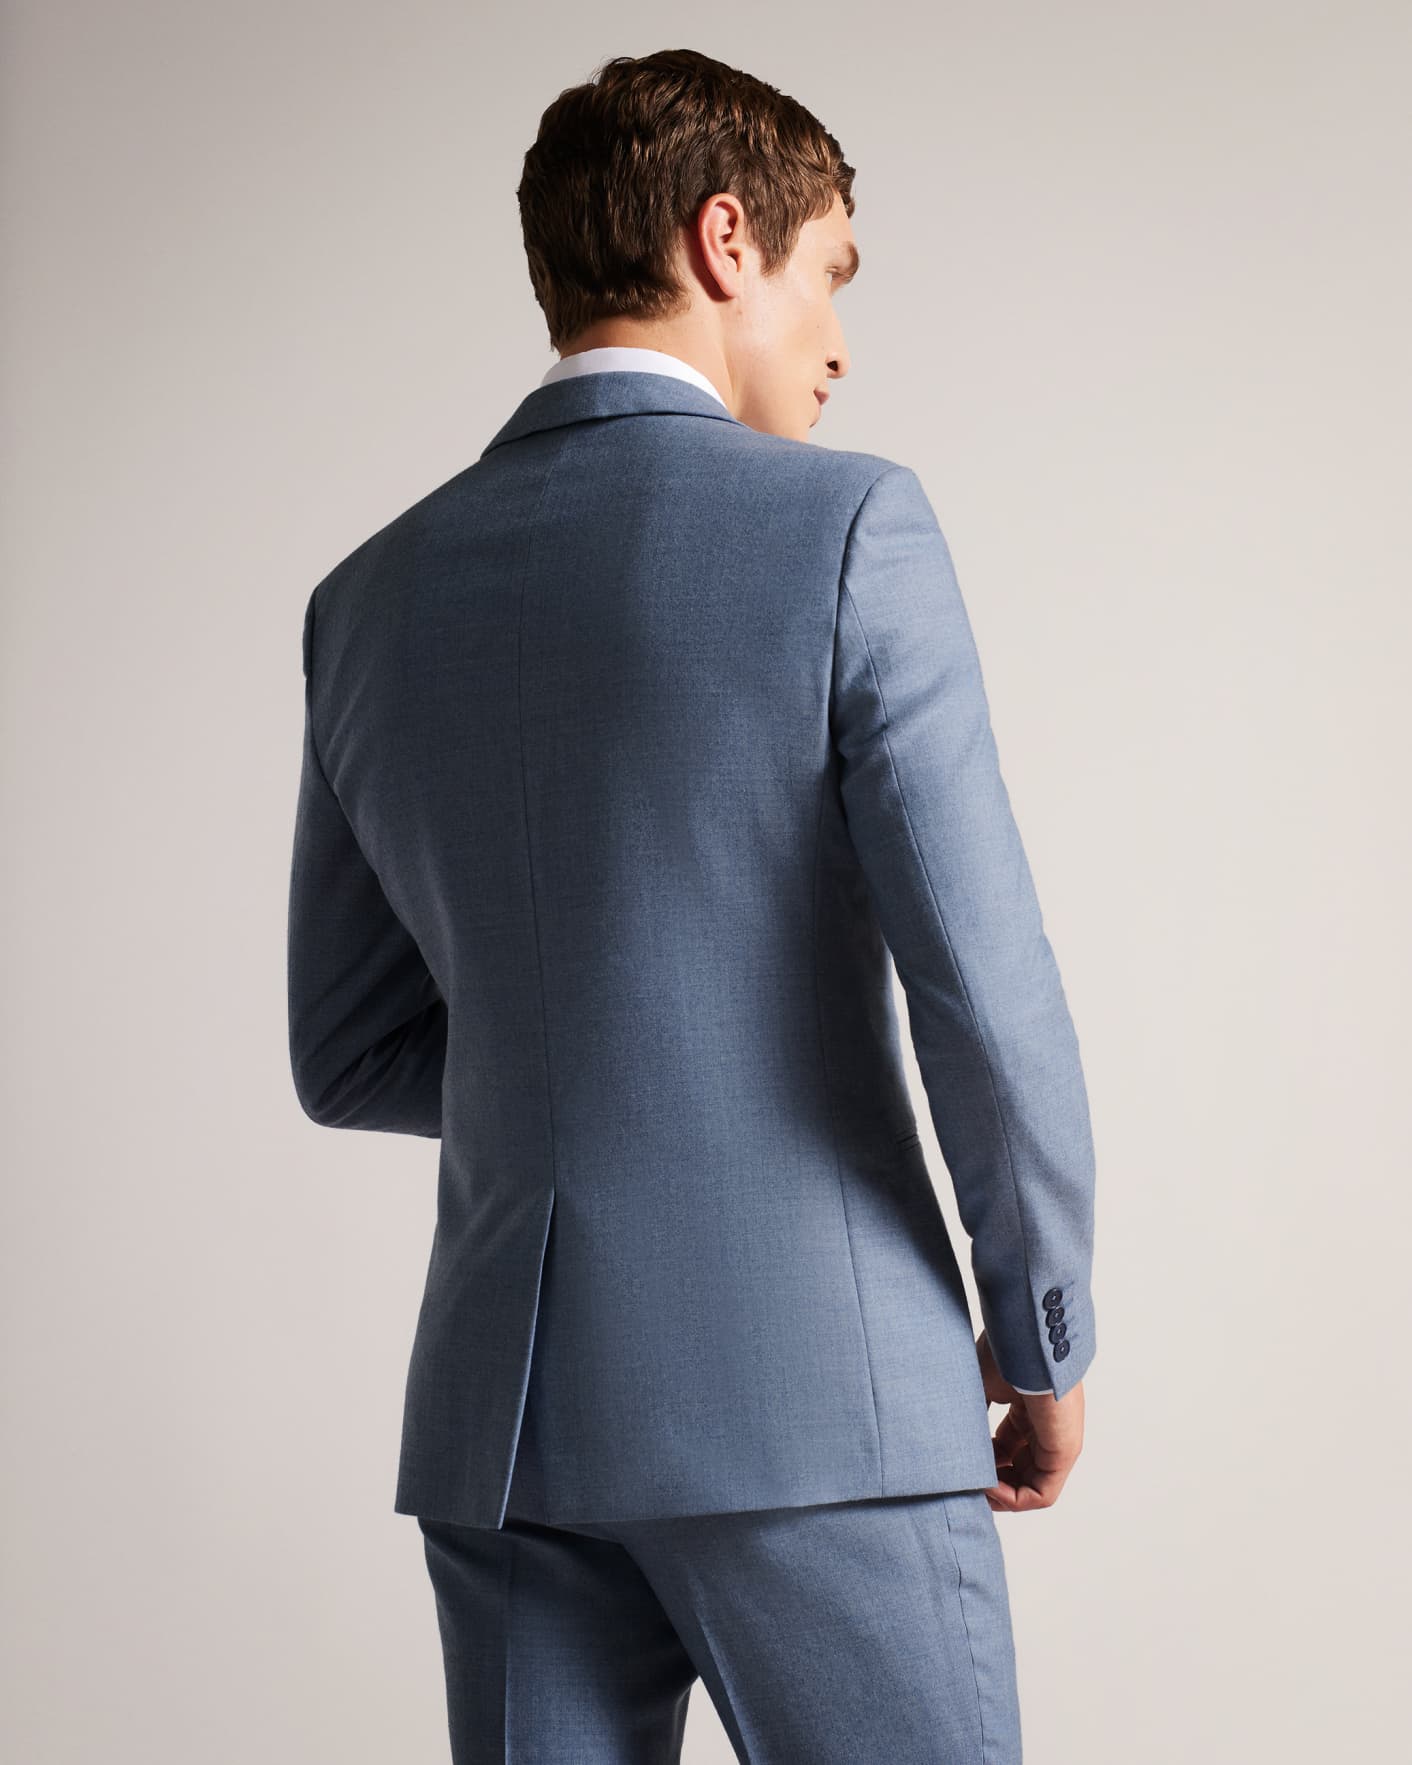 Light Blue Wool Blend Slim Suit Jacket Ted Baker